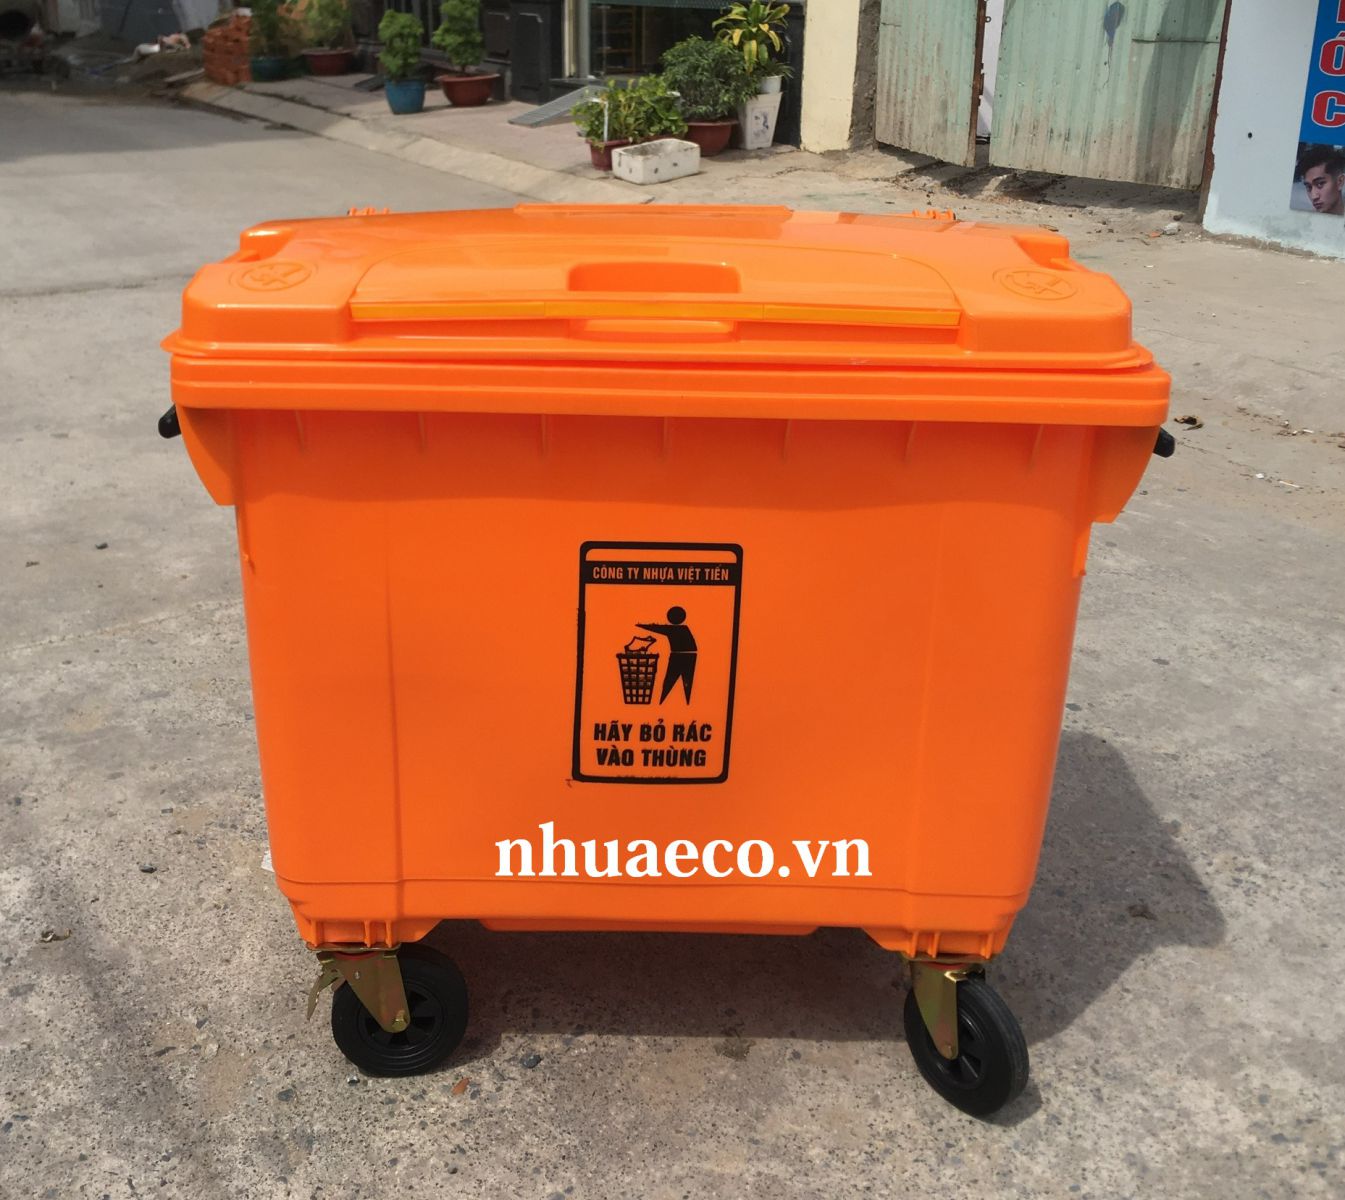 Thùng rác nhựa 660l màu cam dán logo theo yêu cầu